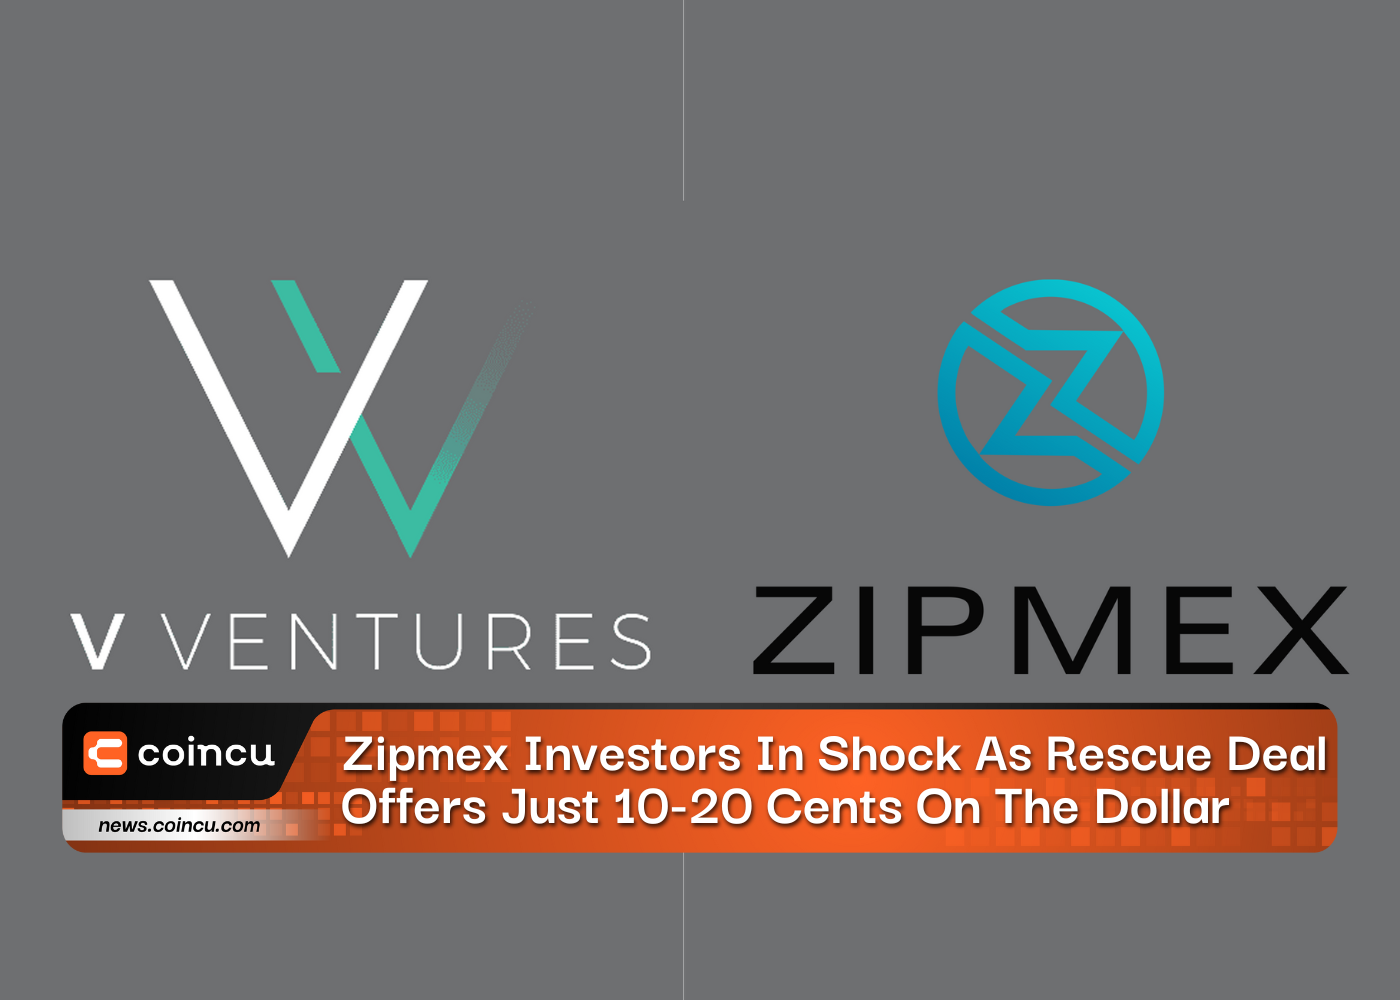 Zipmex Investors In Shock As Rescue Deal